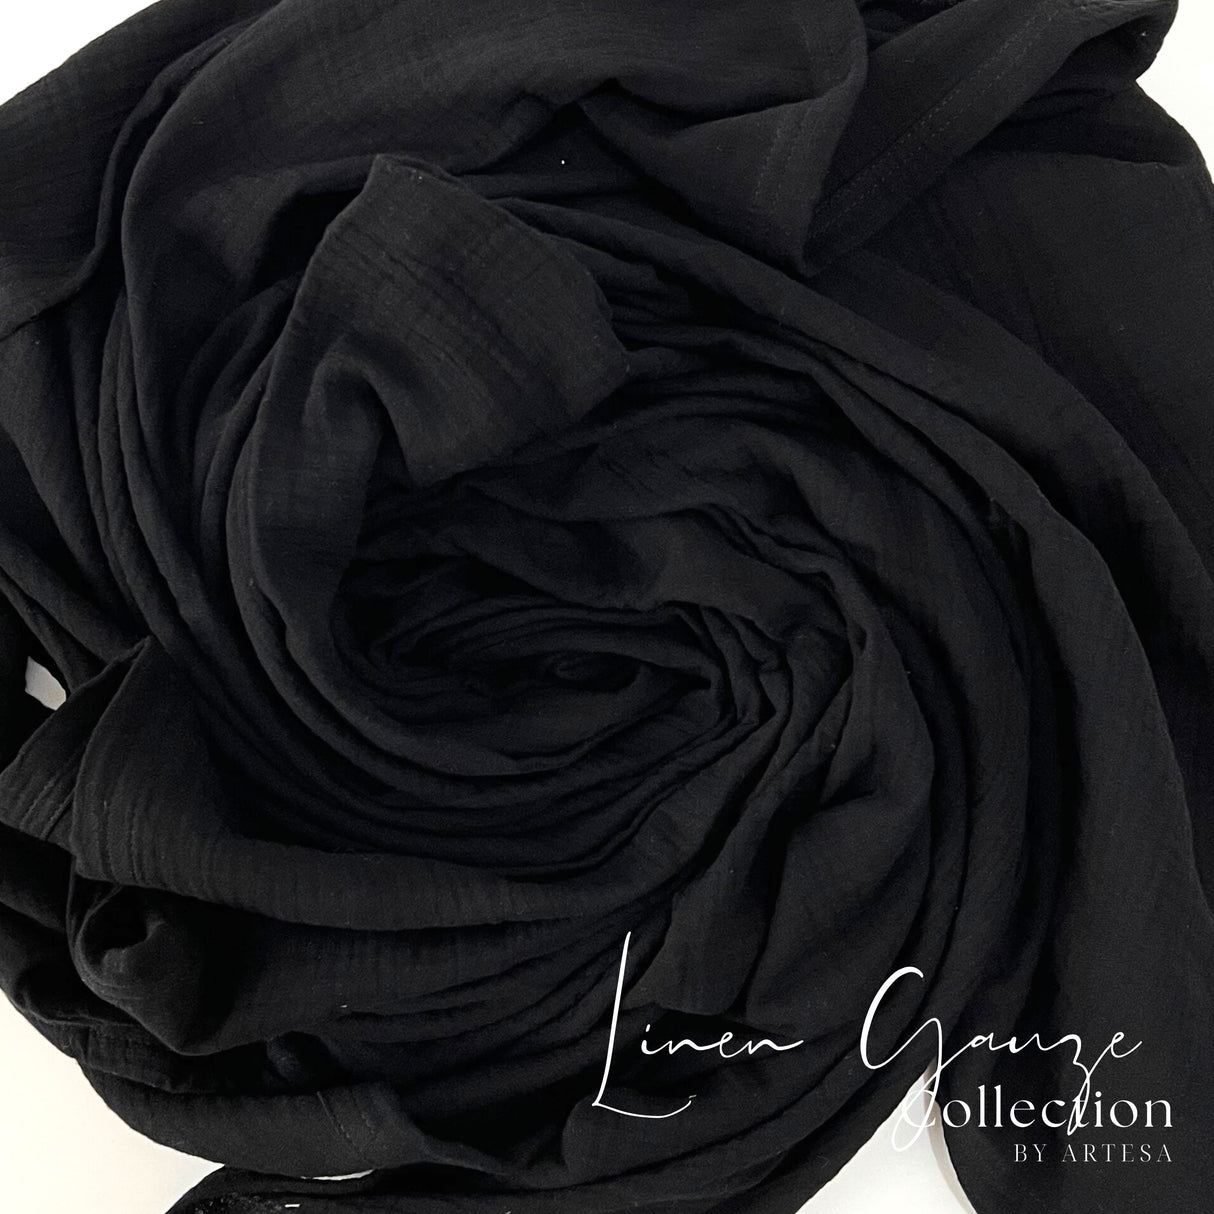 Artesa Cloud (Linen Gauze) Throw Blanket in Black